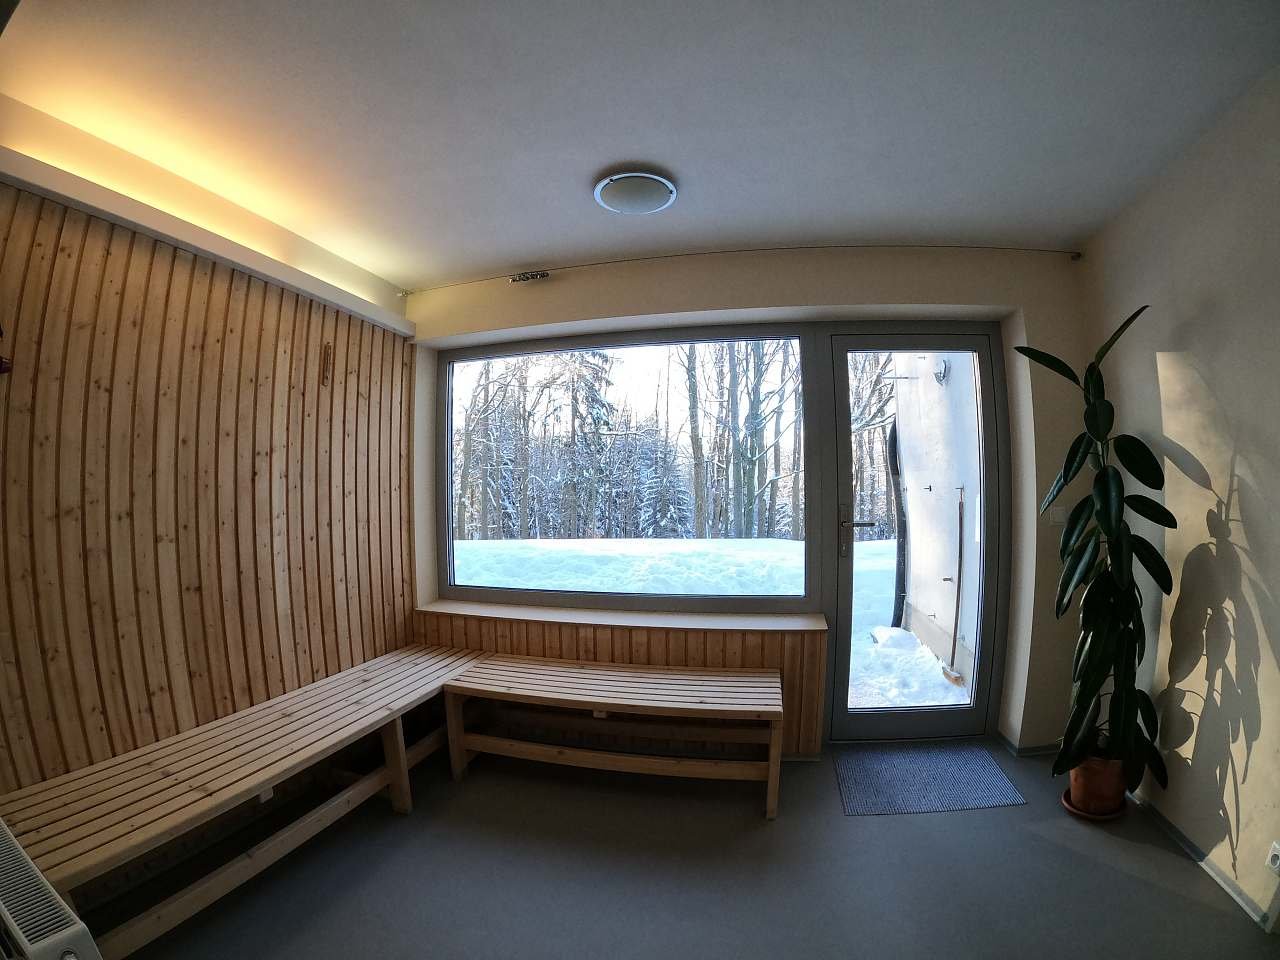 Odpočívárna k sauně